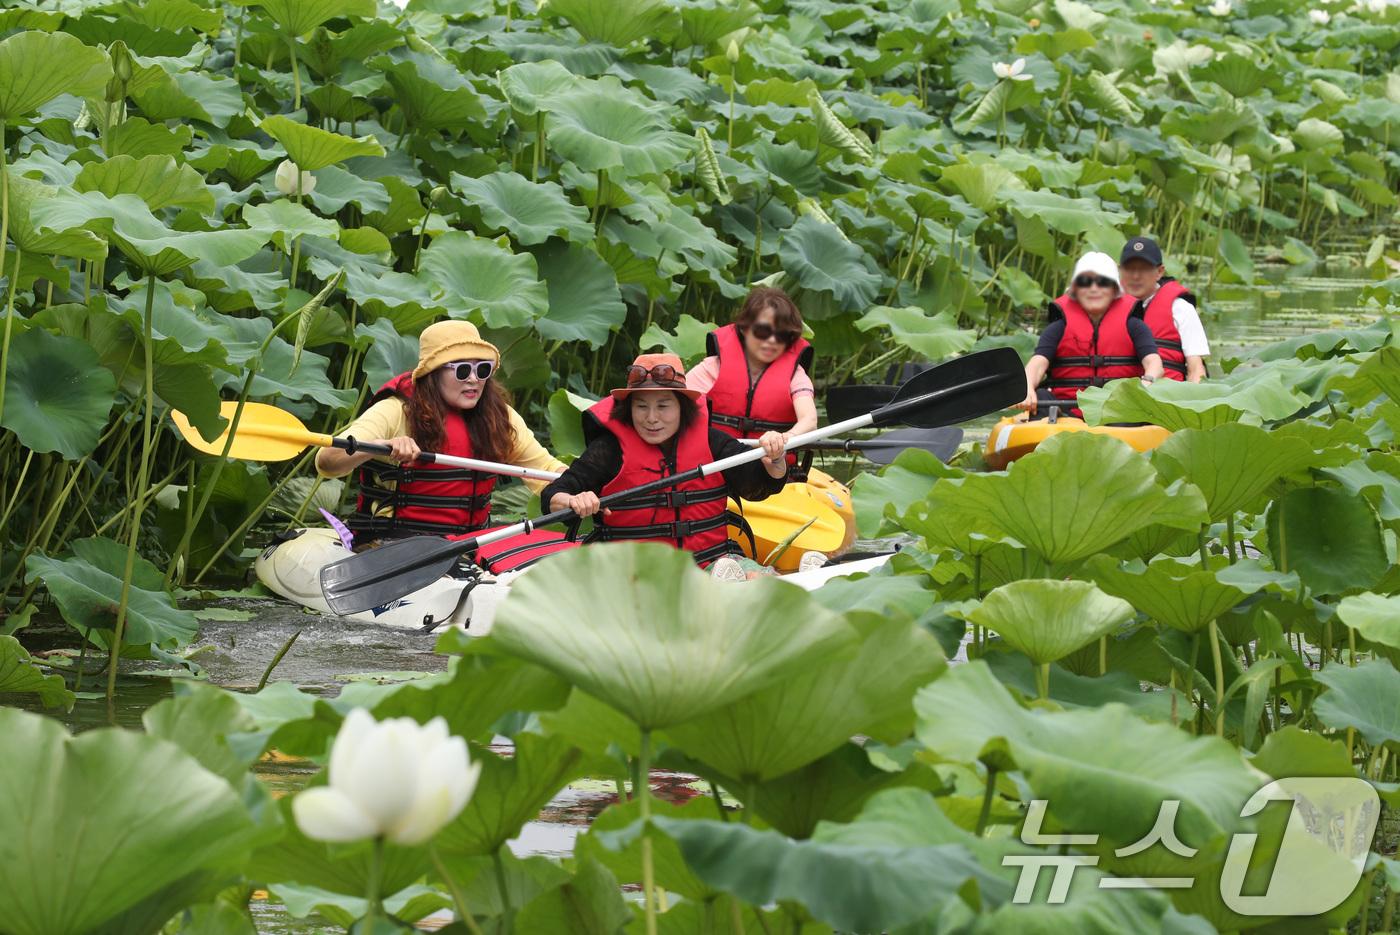 (부여=뉴스1) 김기태 기자 = 3일 충남 부여 서동공원(궁남지)에서 진행되는 부여서동연꽃축제에서 관광객들이 카누 체험을 즐기고 있다. 부여서동연꽃축제 축제는 오는 5일부터 7일까 …